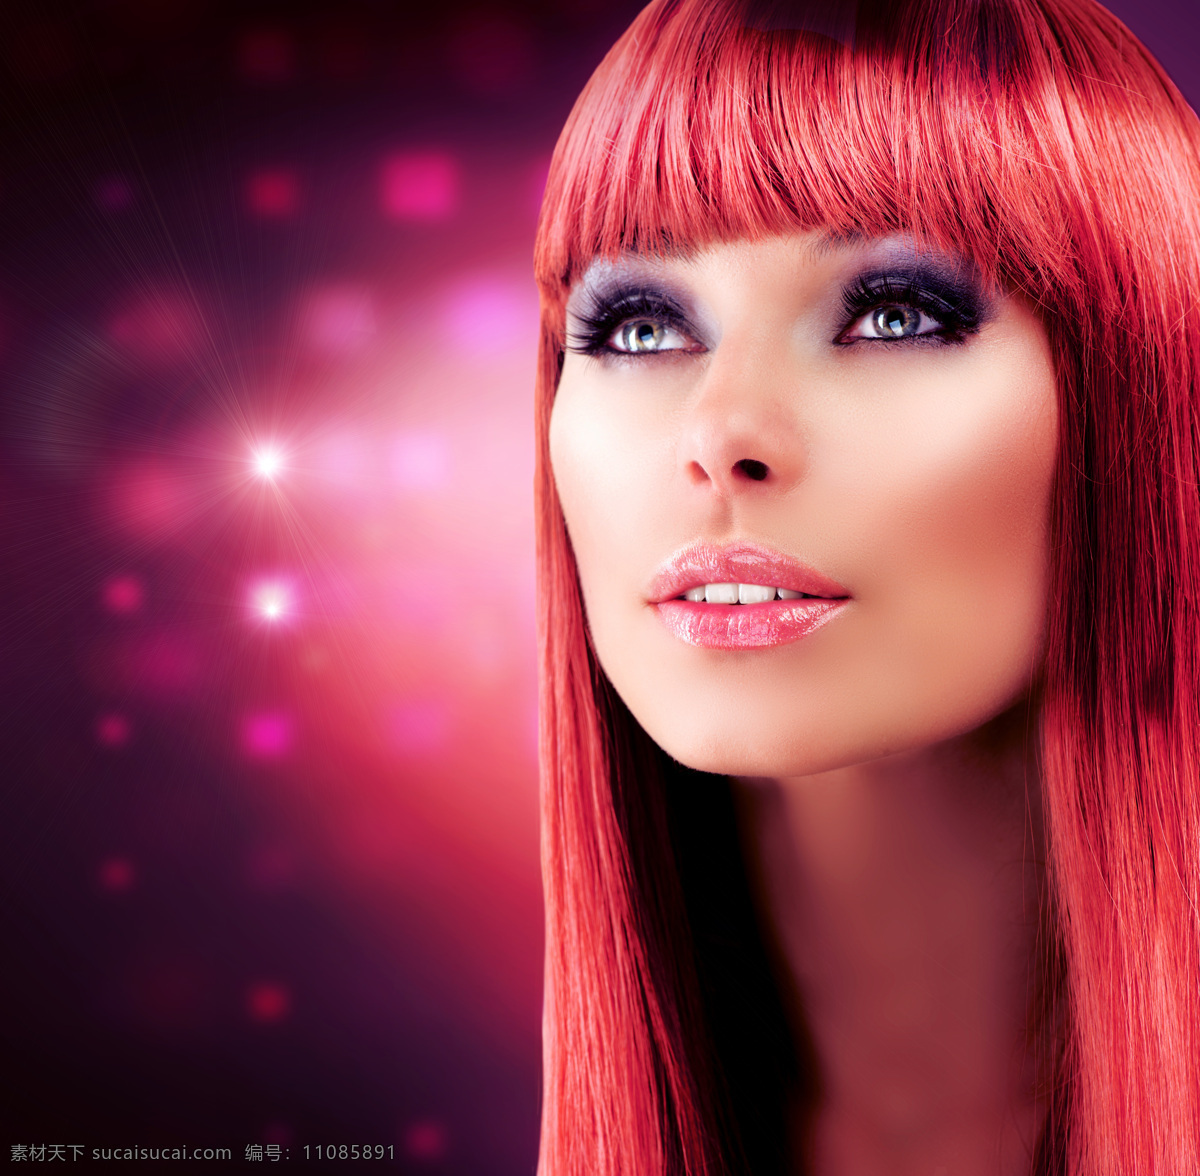 红 发 美女 红发 美发 美容 女人 美女摄影 人物素材 美女图片 人物图片